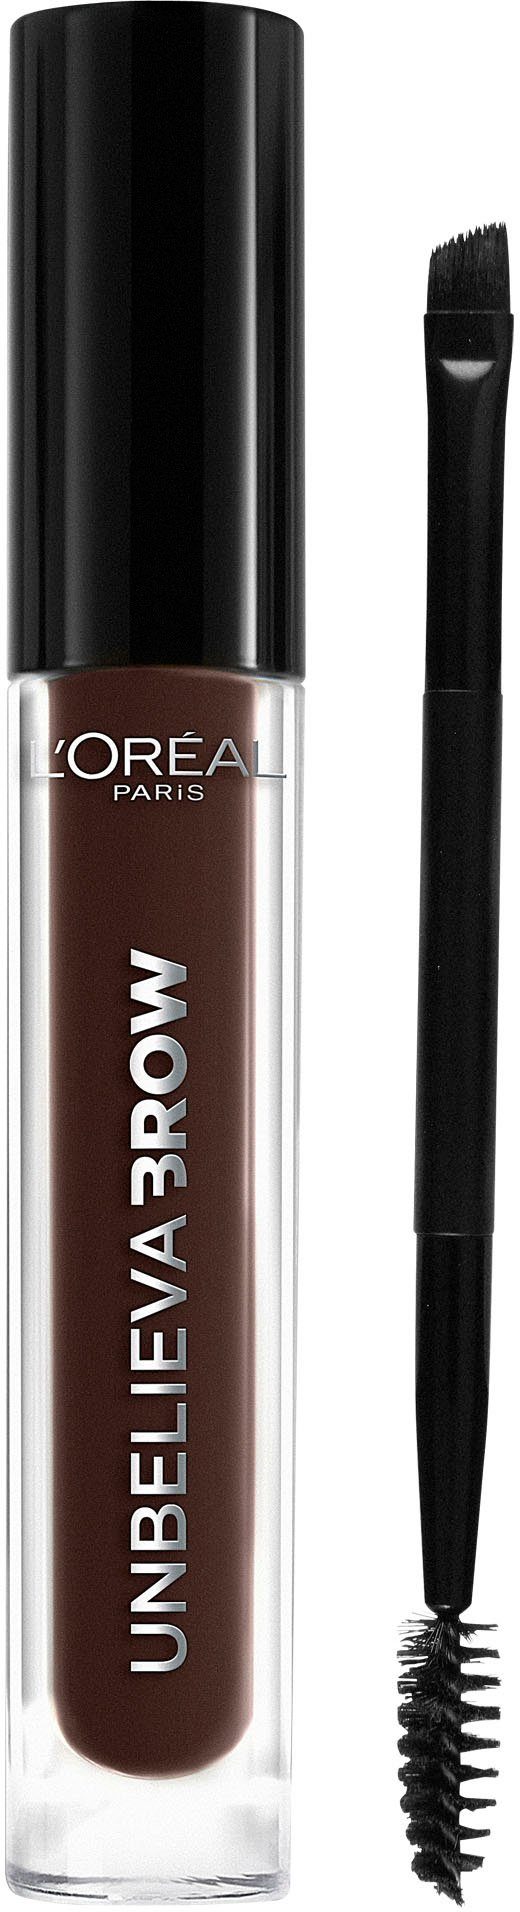 L'ORÉAL PARIS Augenbrauen-Gel Unbelieva Brow, mit unterschiedlichen Applikatoren, wischfest, Augen-Make-Up 109 Ebony | Augenbrauen-Make-Up